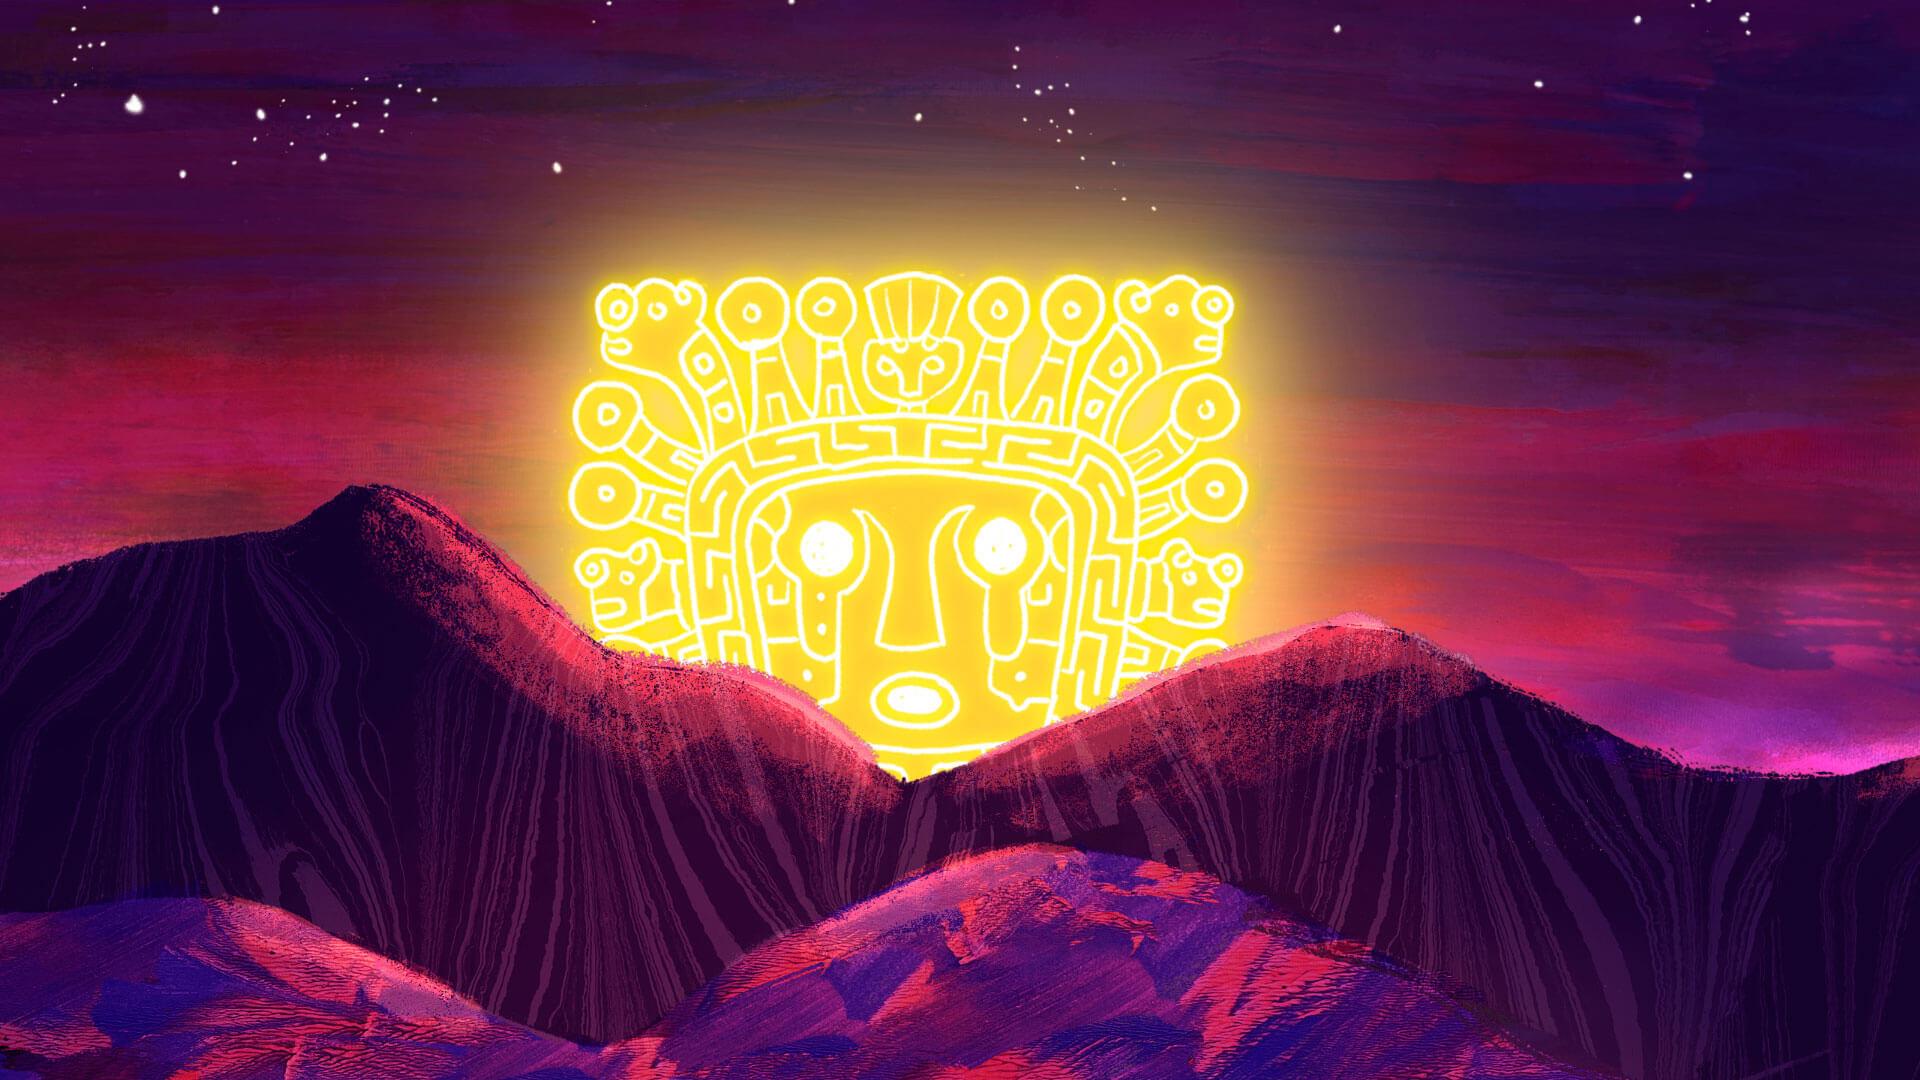 Pica Pica busca rescatar el juego - El Sol de México